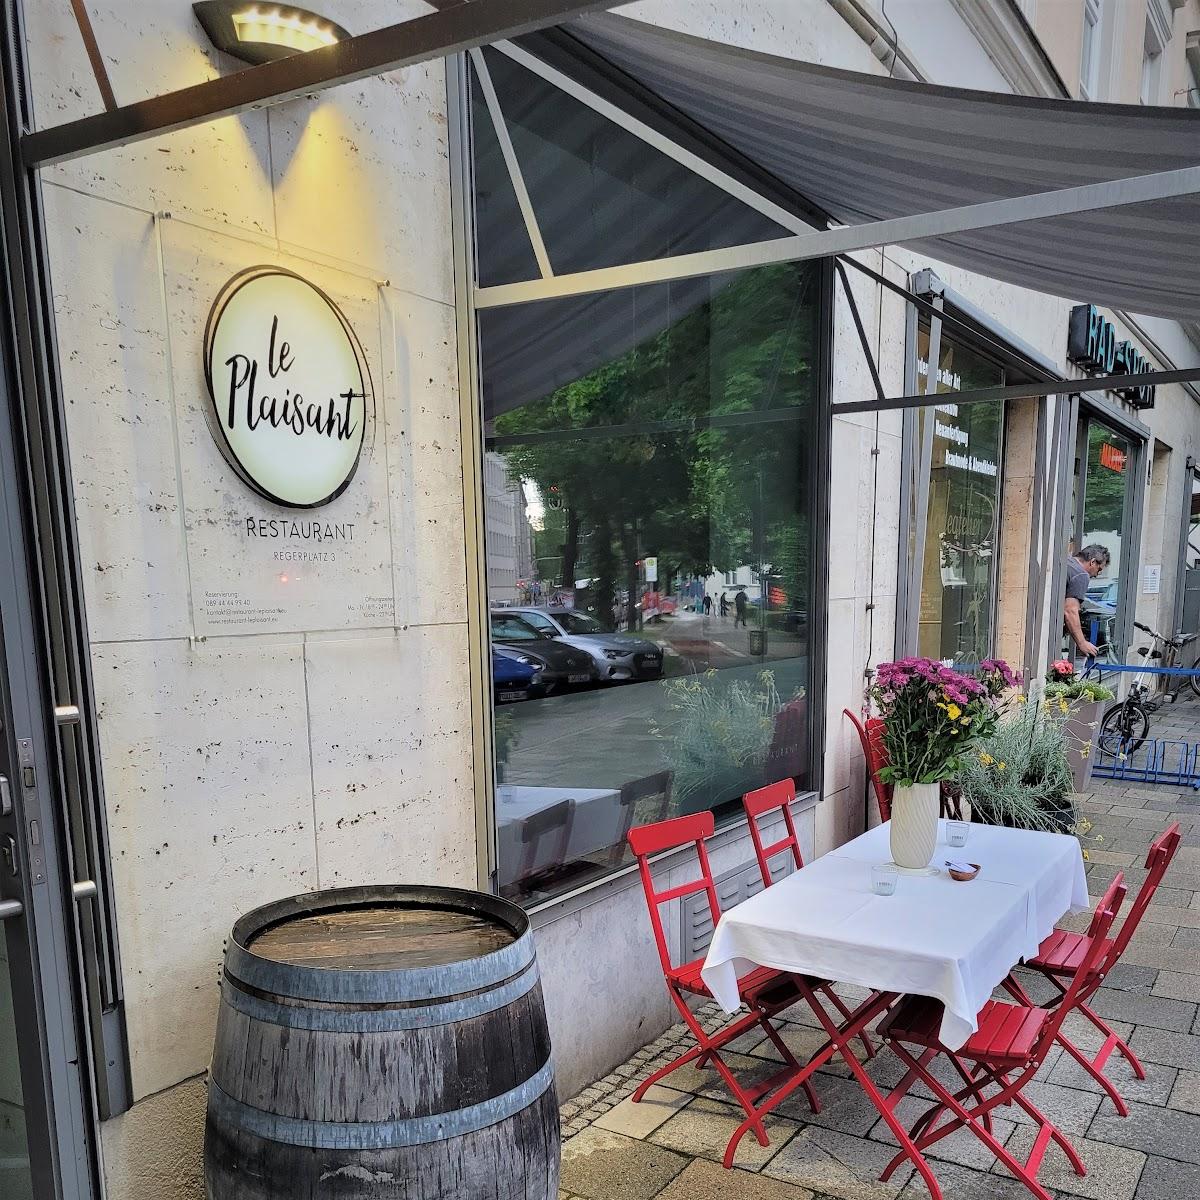 Restaurant Ebert München - Die gute Nachbarschaft